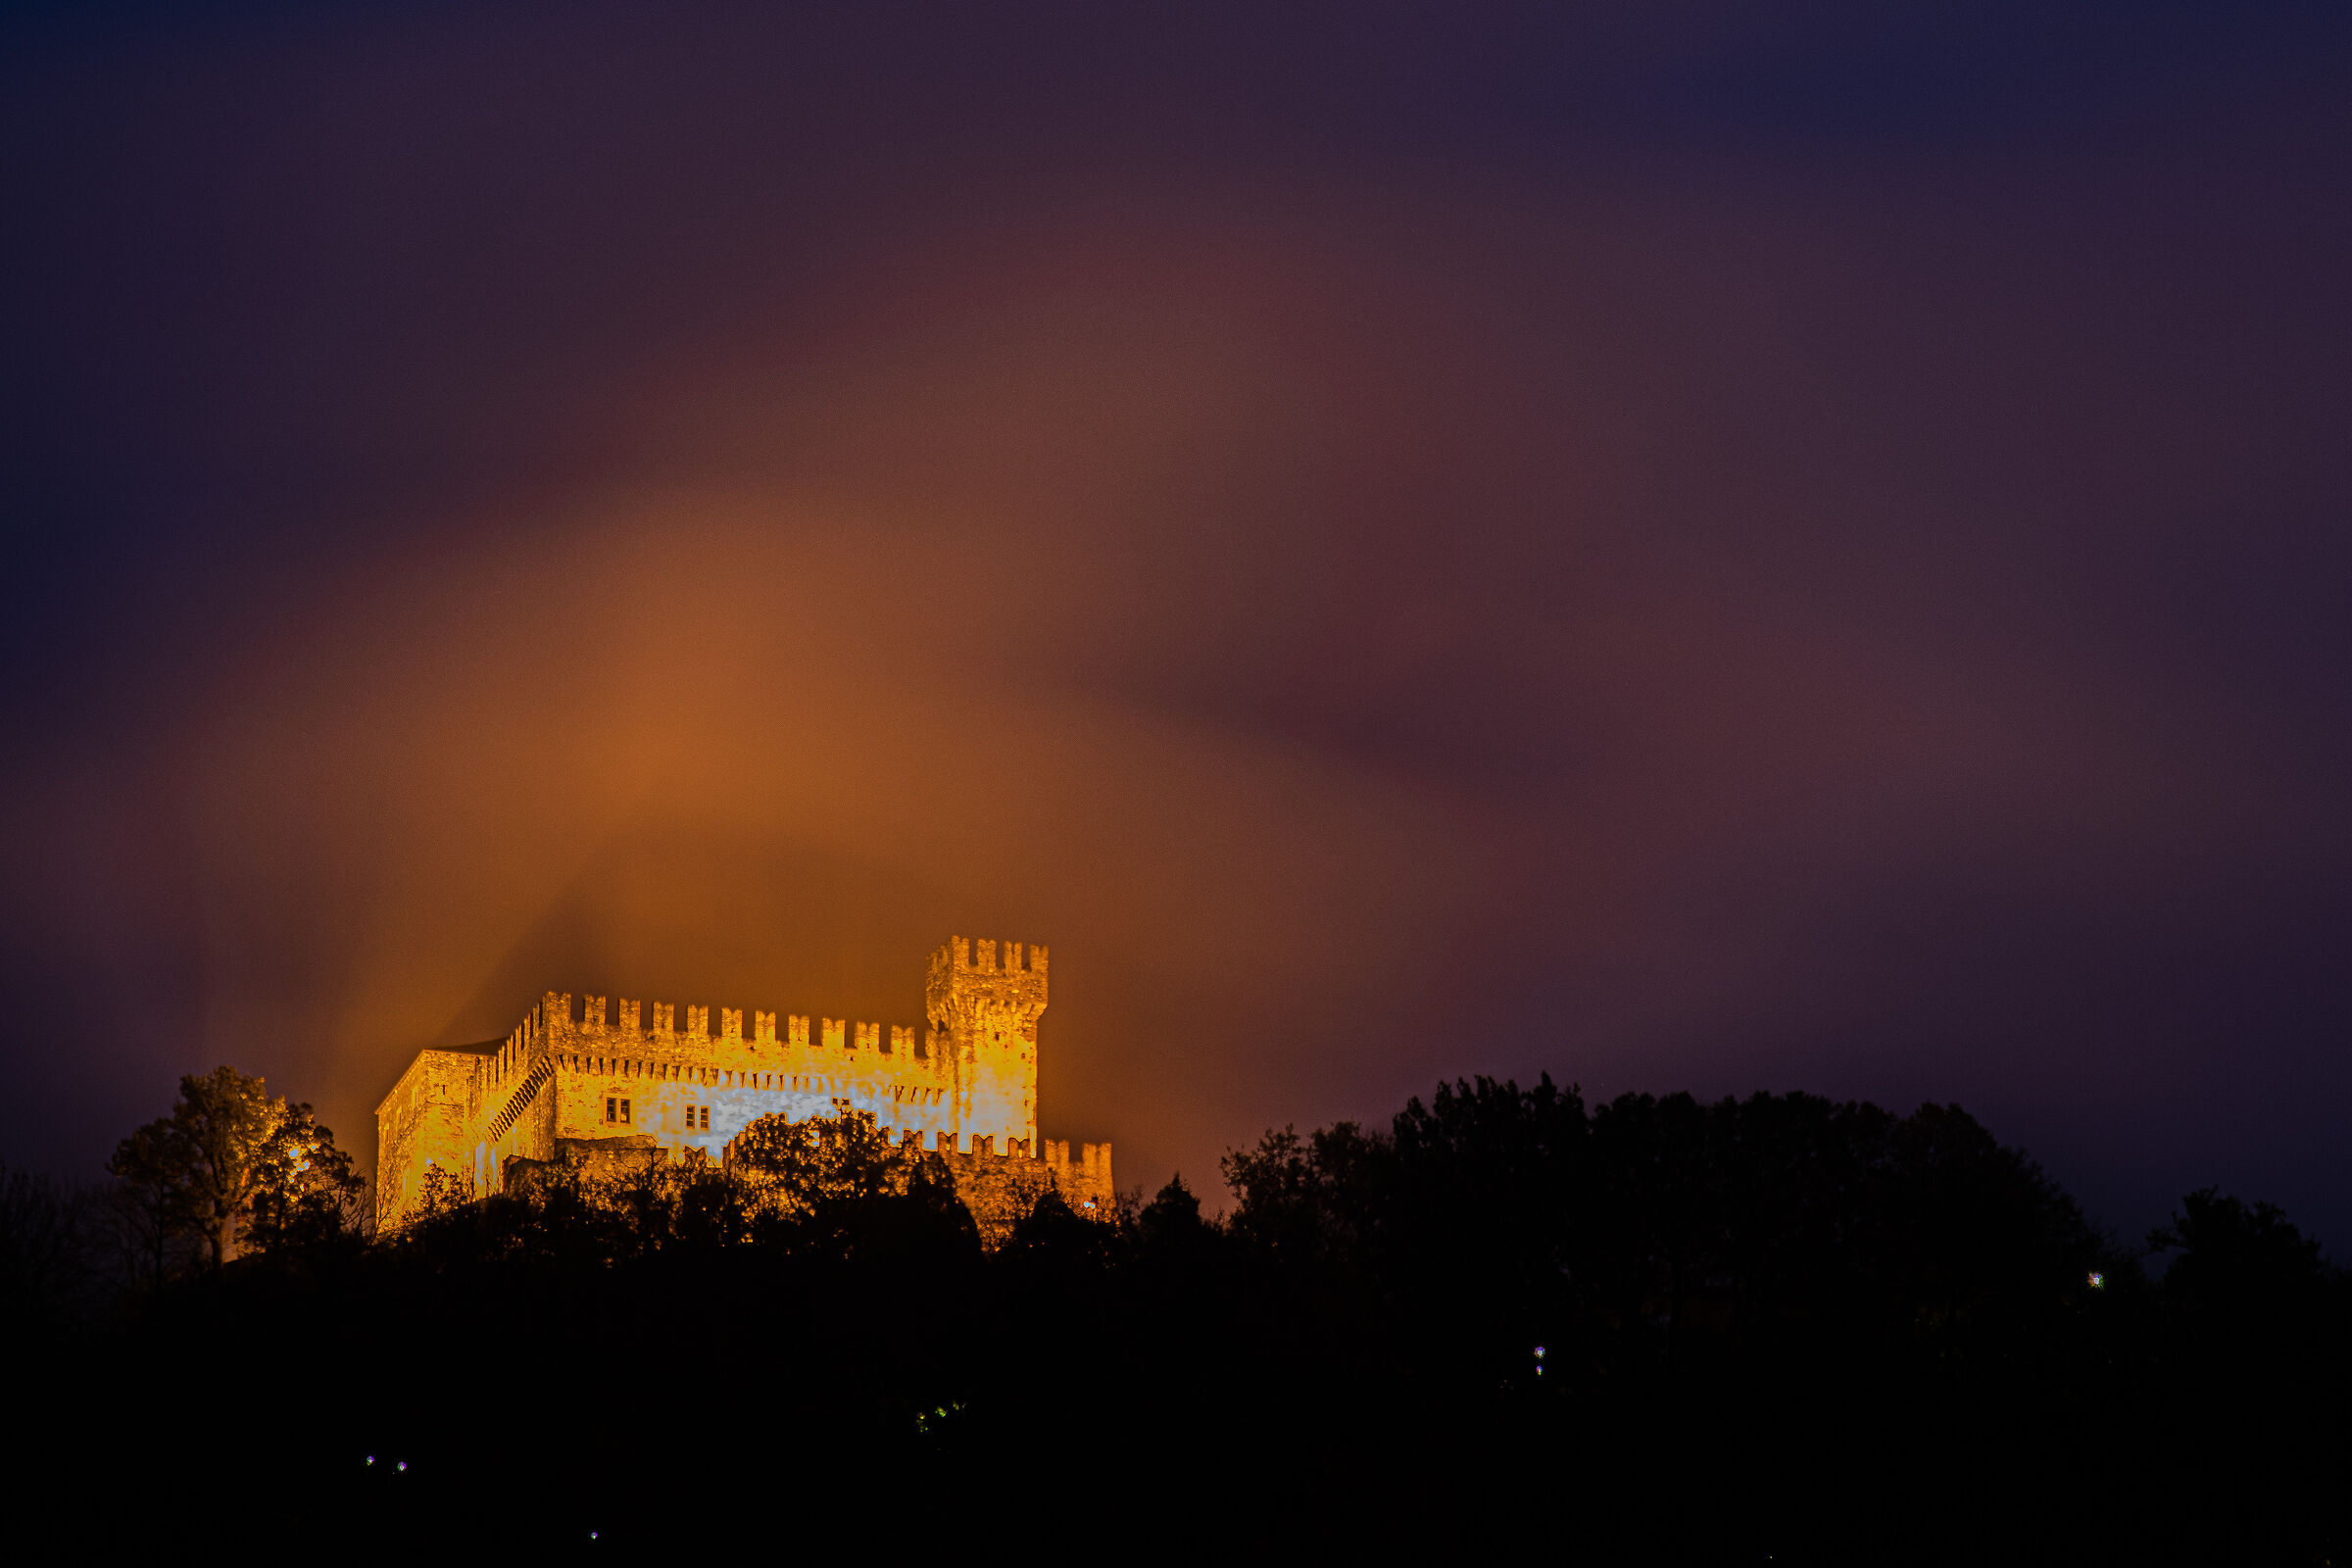 Strange lights at the castle ...